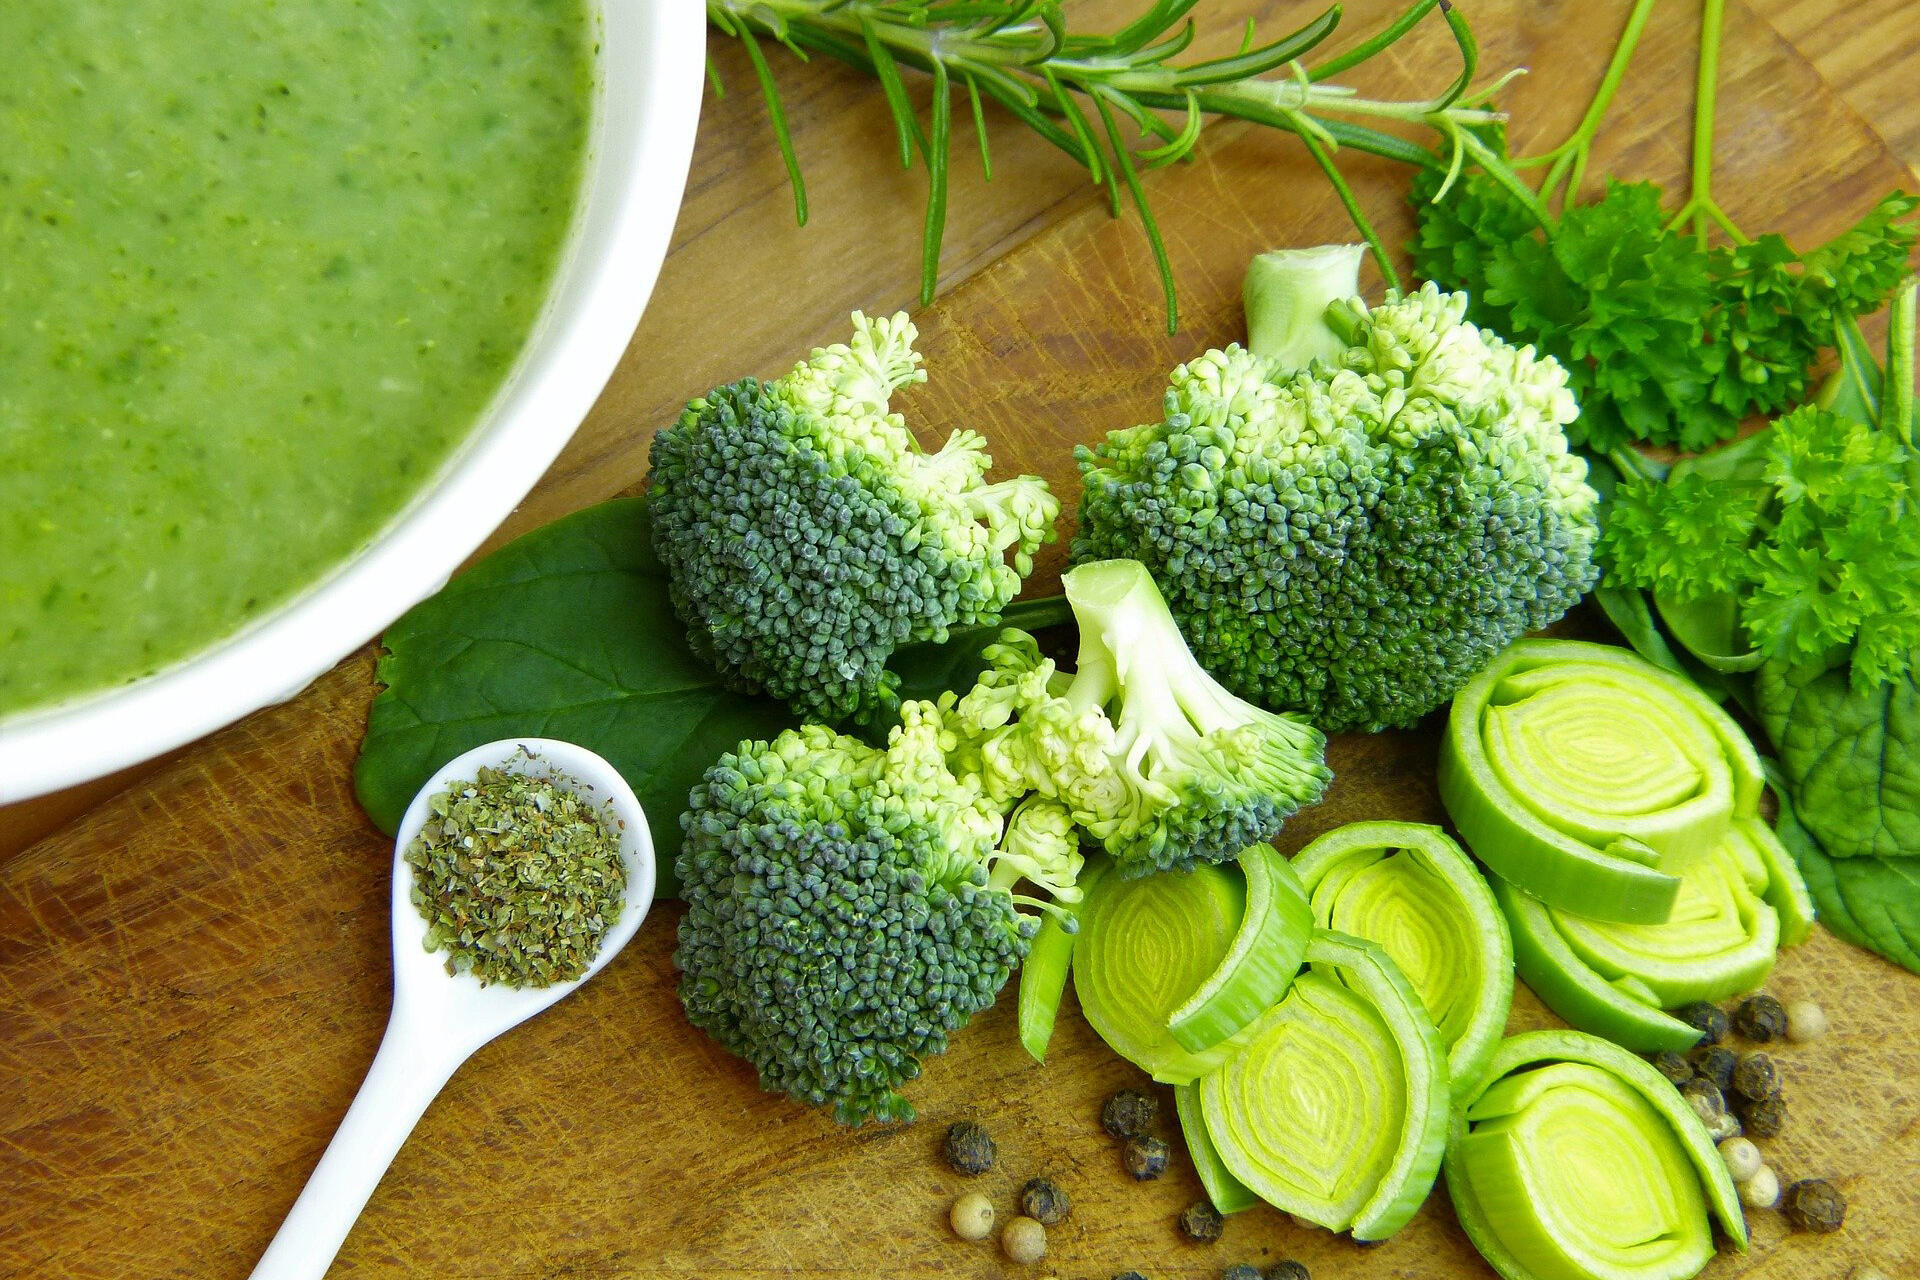 Bild vergrößern: Auf dem Tisch befindet sich grünes Gemüse (Brokkoli, Lauch, Salbei und Petersilie) und eine Suppentasse.